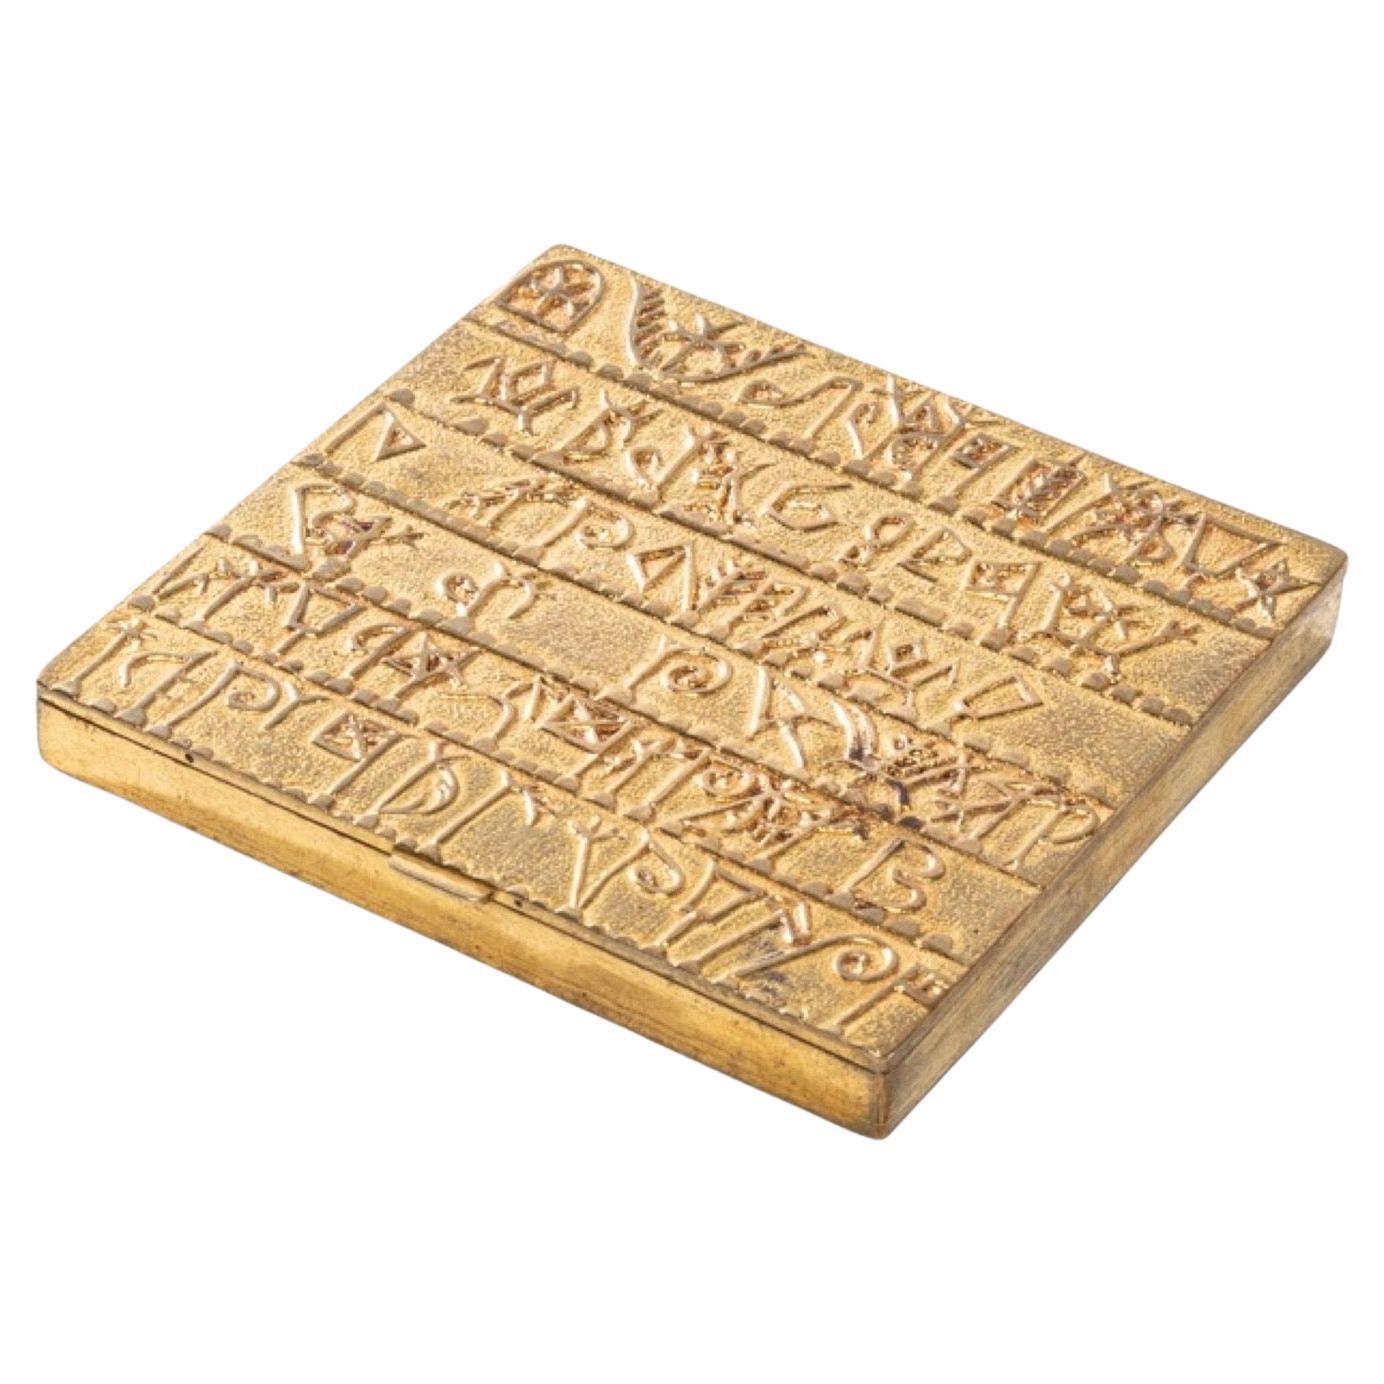 Armenisches Alphabet von Line Vautrin, vergoldete Bronze kompakt im Angebot